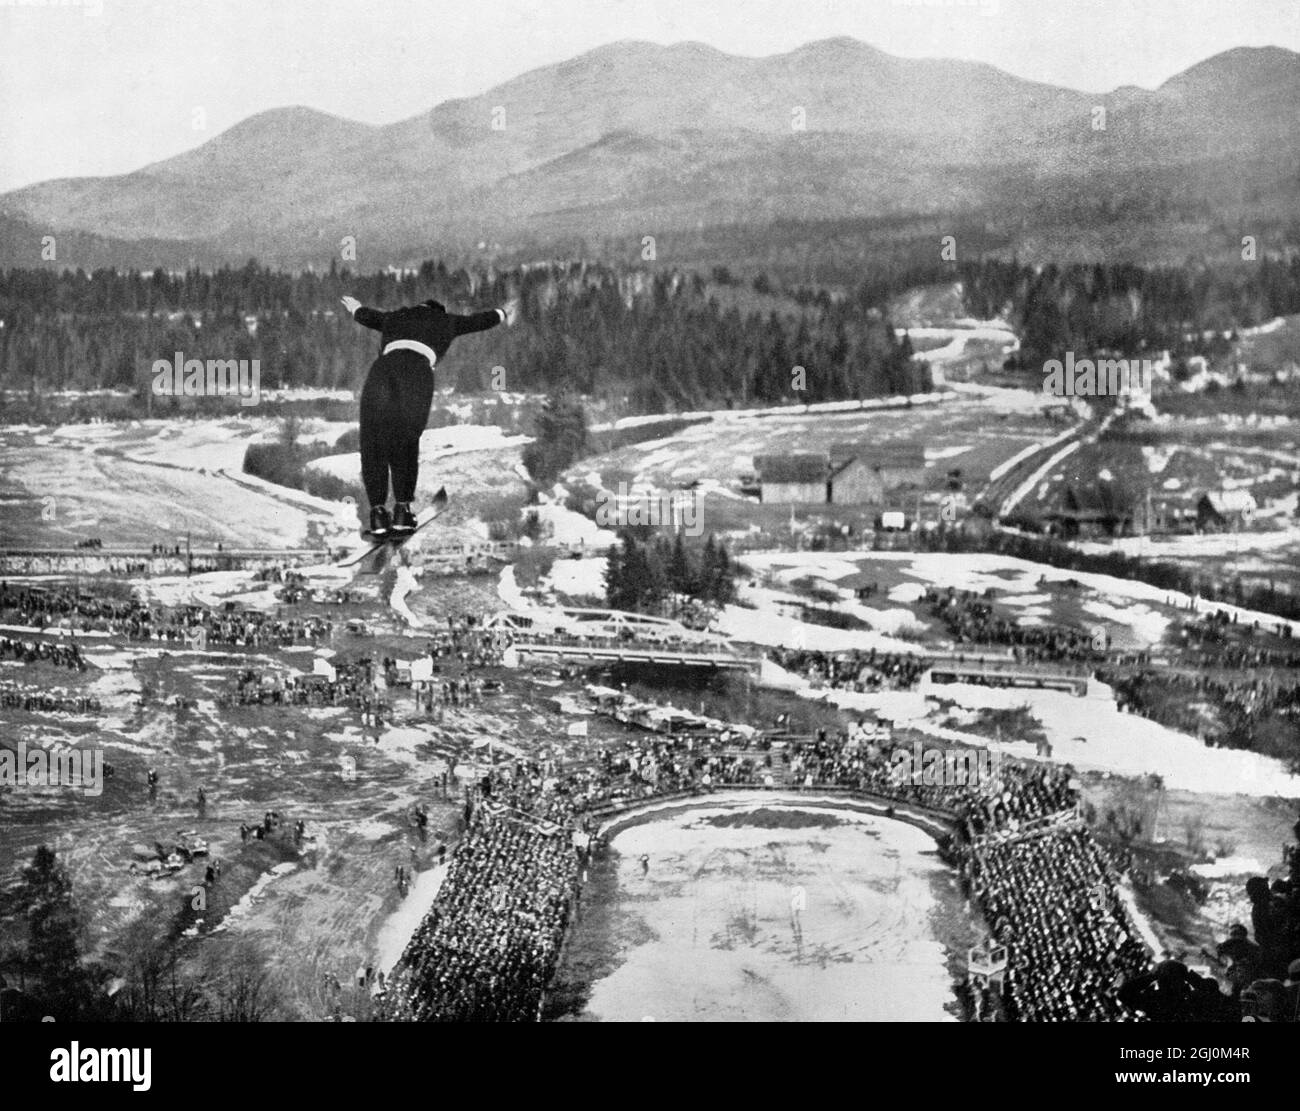 Février 1932: Vue en grand angle du skieur suisse Cesare Chiogna en vol alors qu'il participe à l'épreuve de saut à ski aux Jeux Olympiques, Lake Placid, New York Banque D'Images